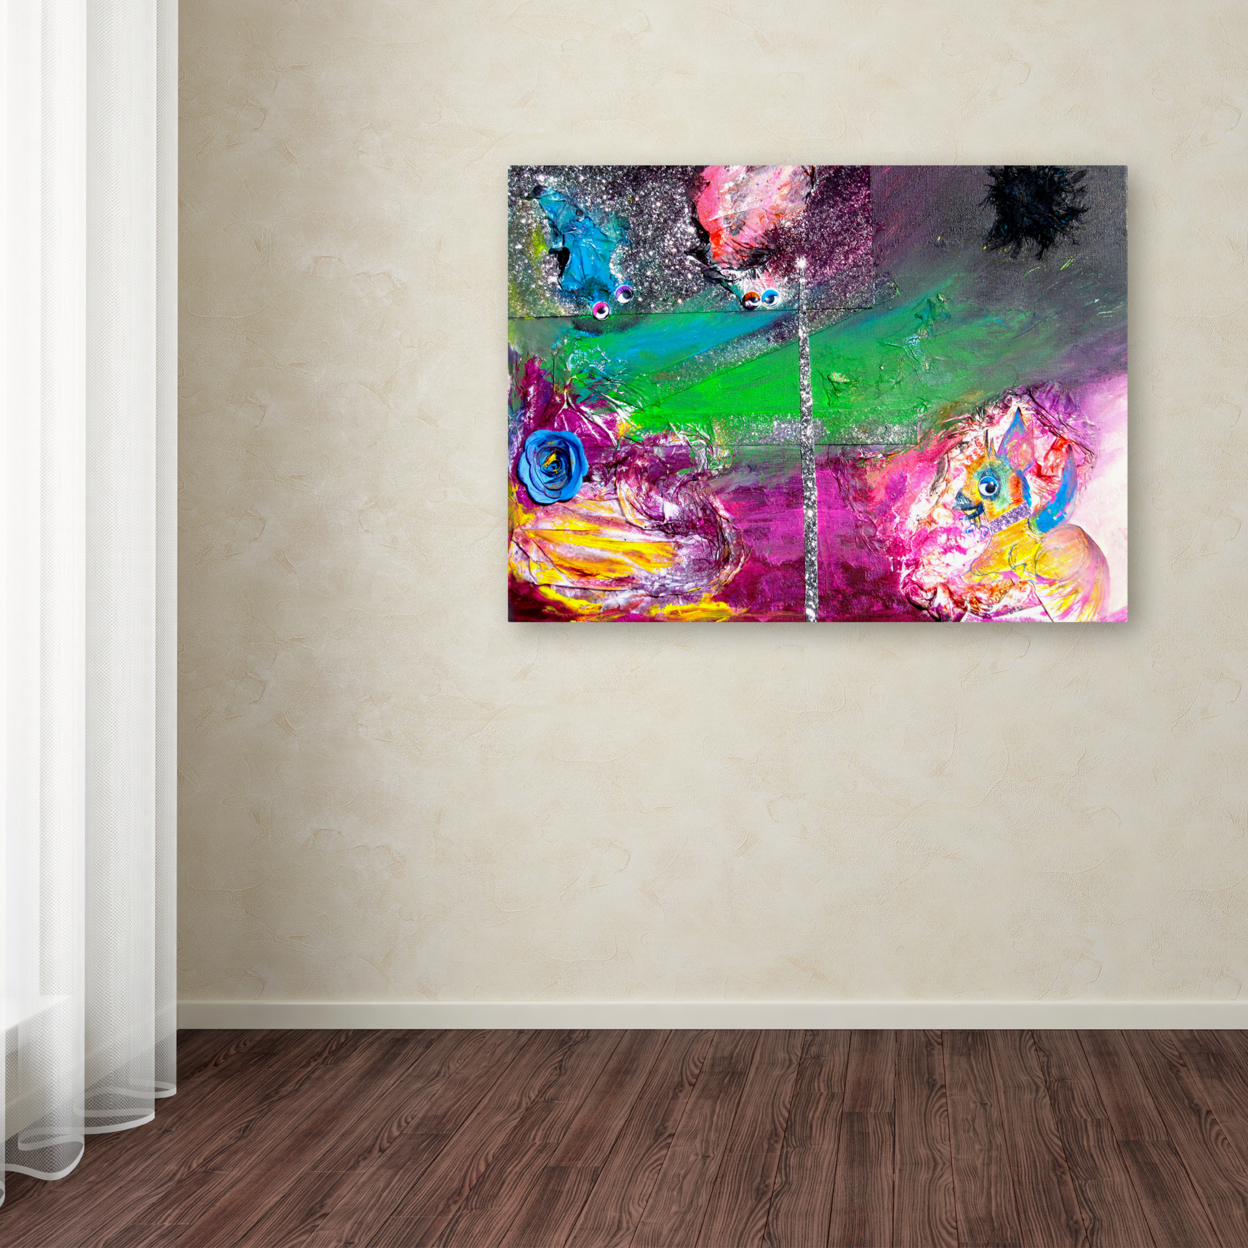 Amanda Rea 'Vertigo' Canvas Wall Art 35 X 47 Inches